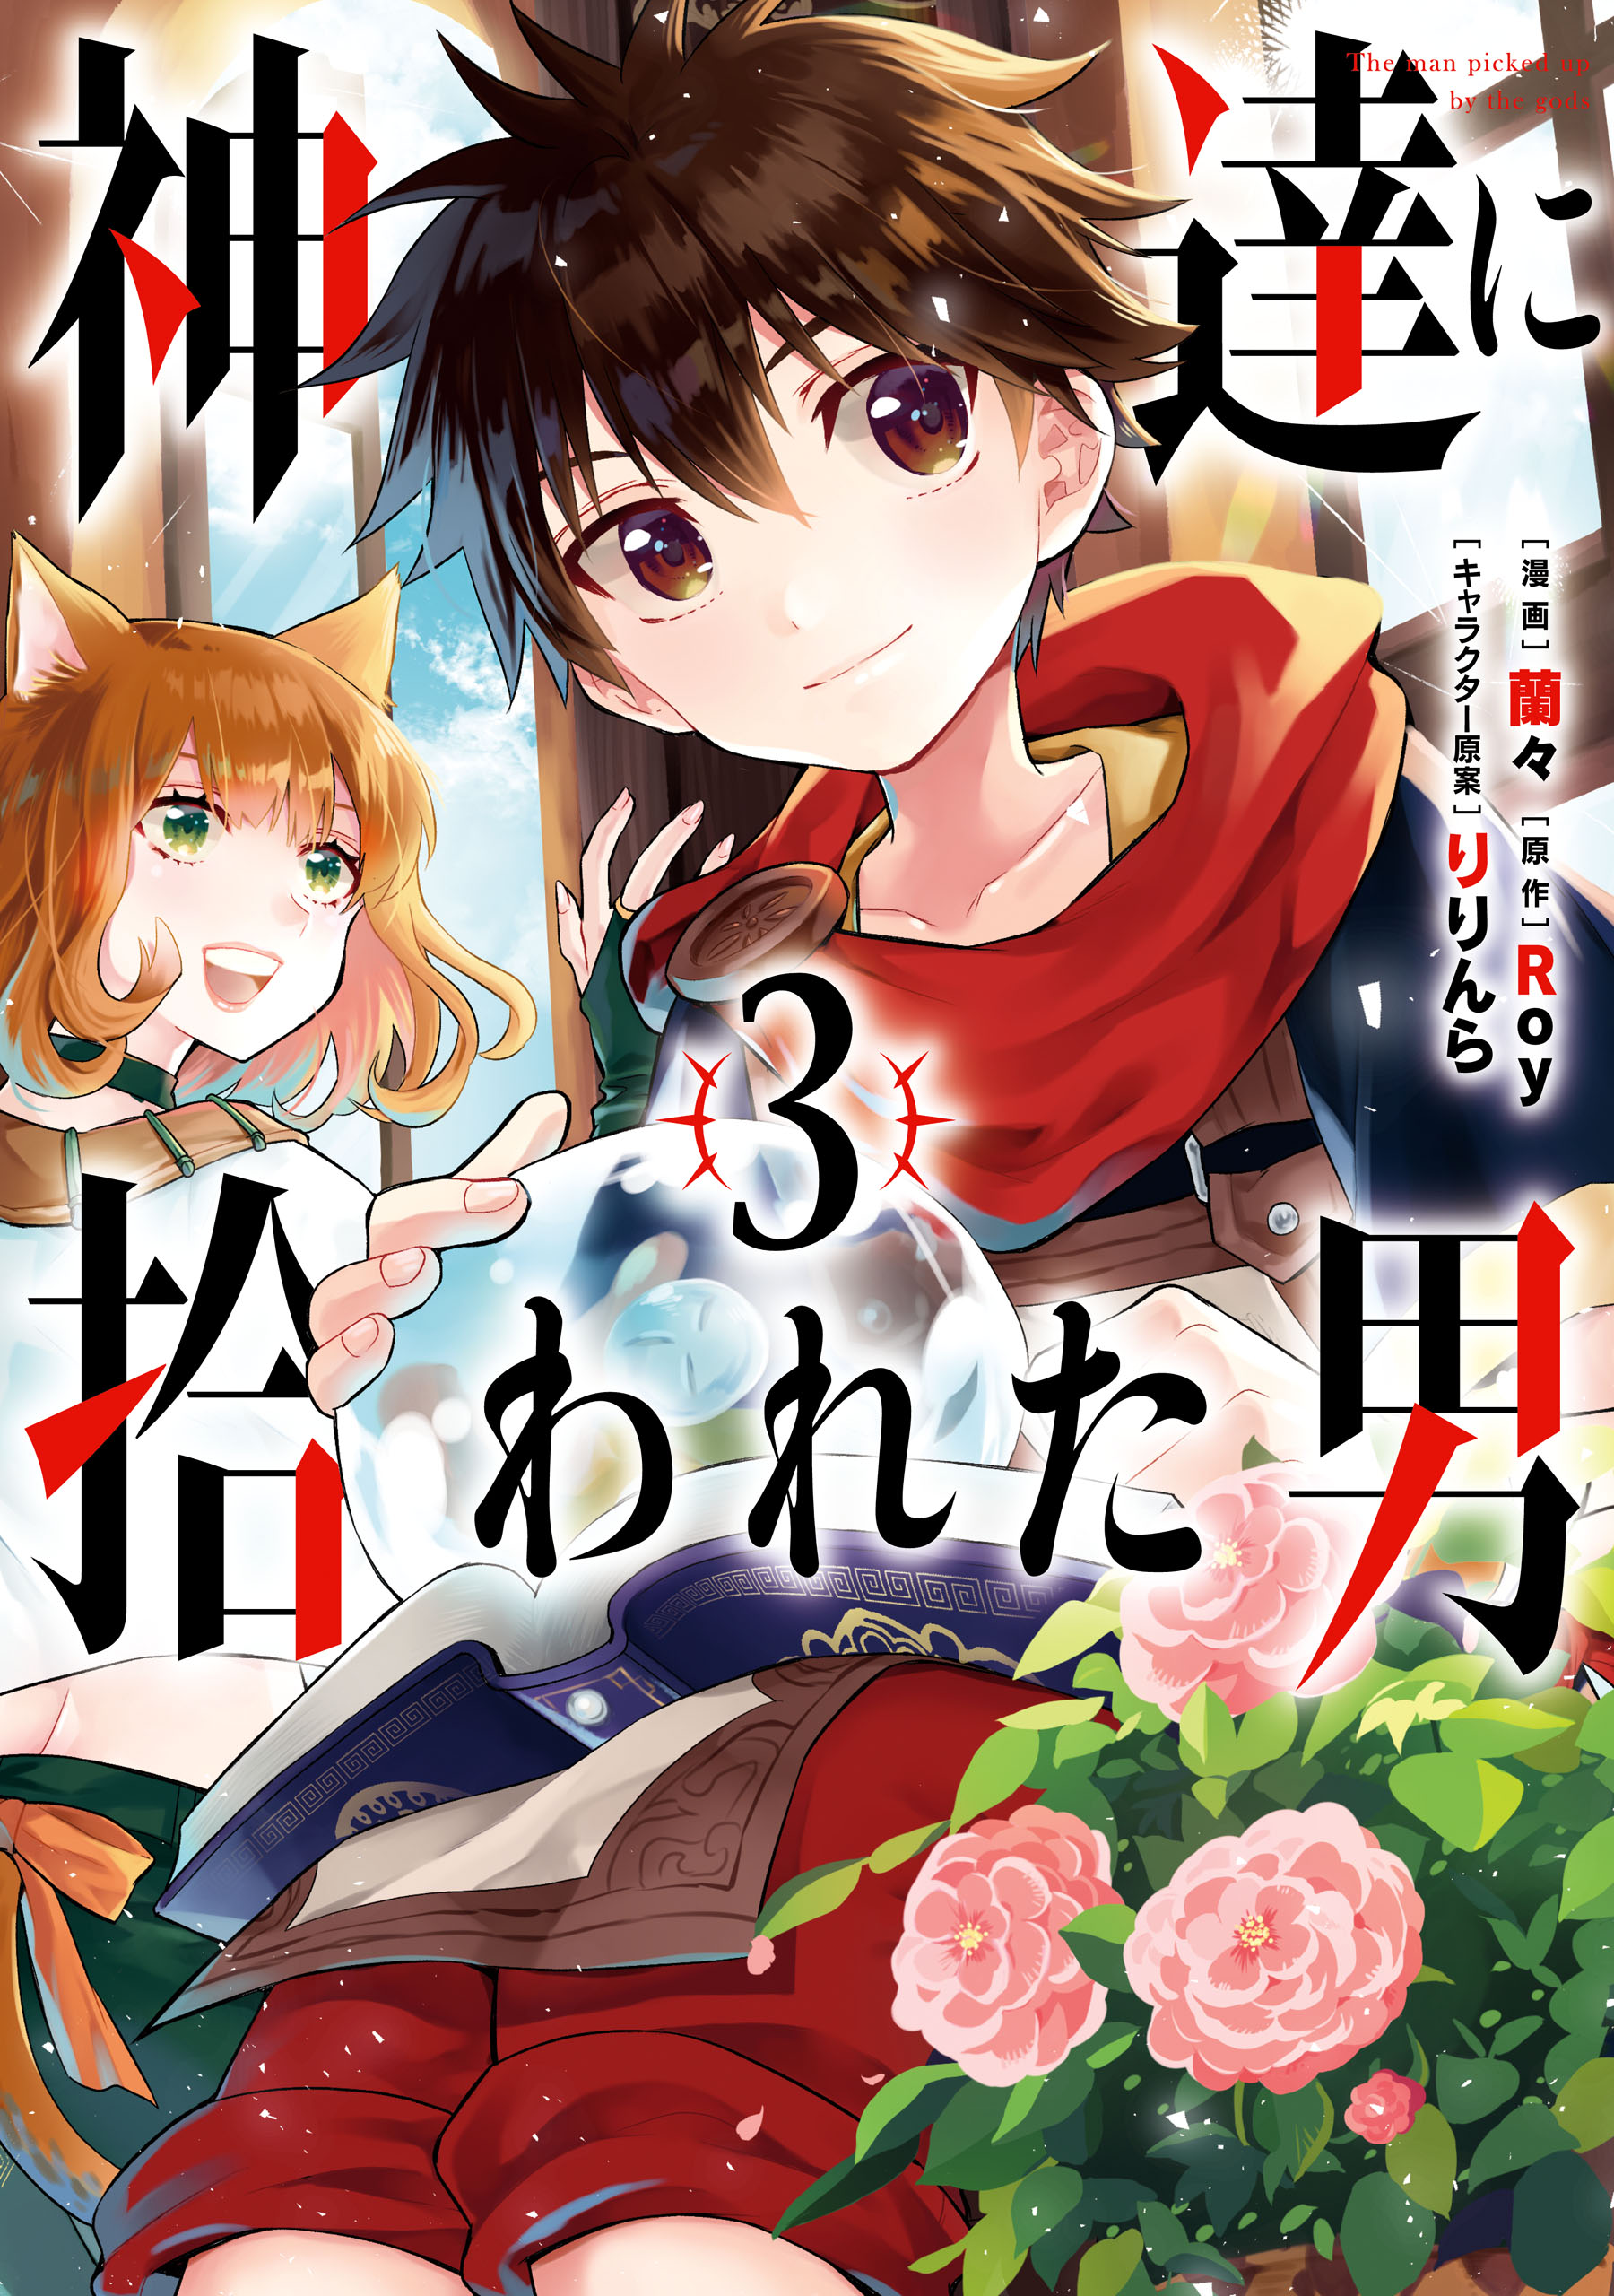 Versão mangá de Kamitachi ni Hirowareta Otoko ganha 9° volume enquanto 2ª  temporada do anime continua em produção!